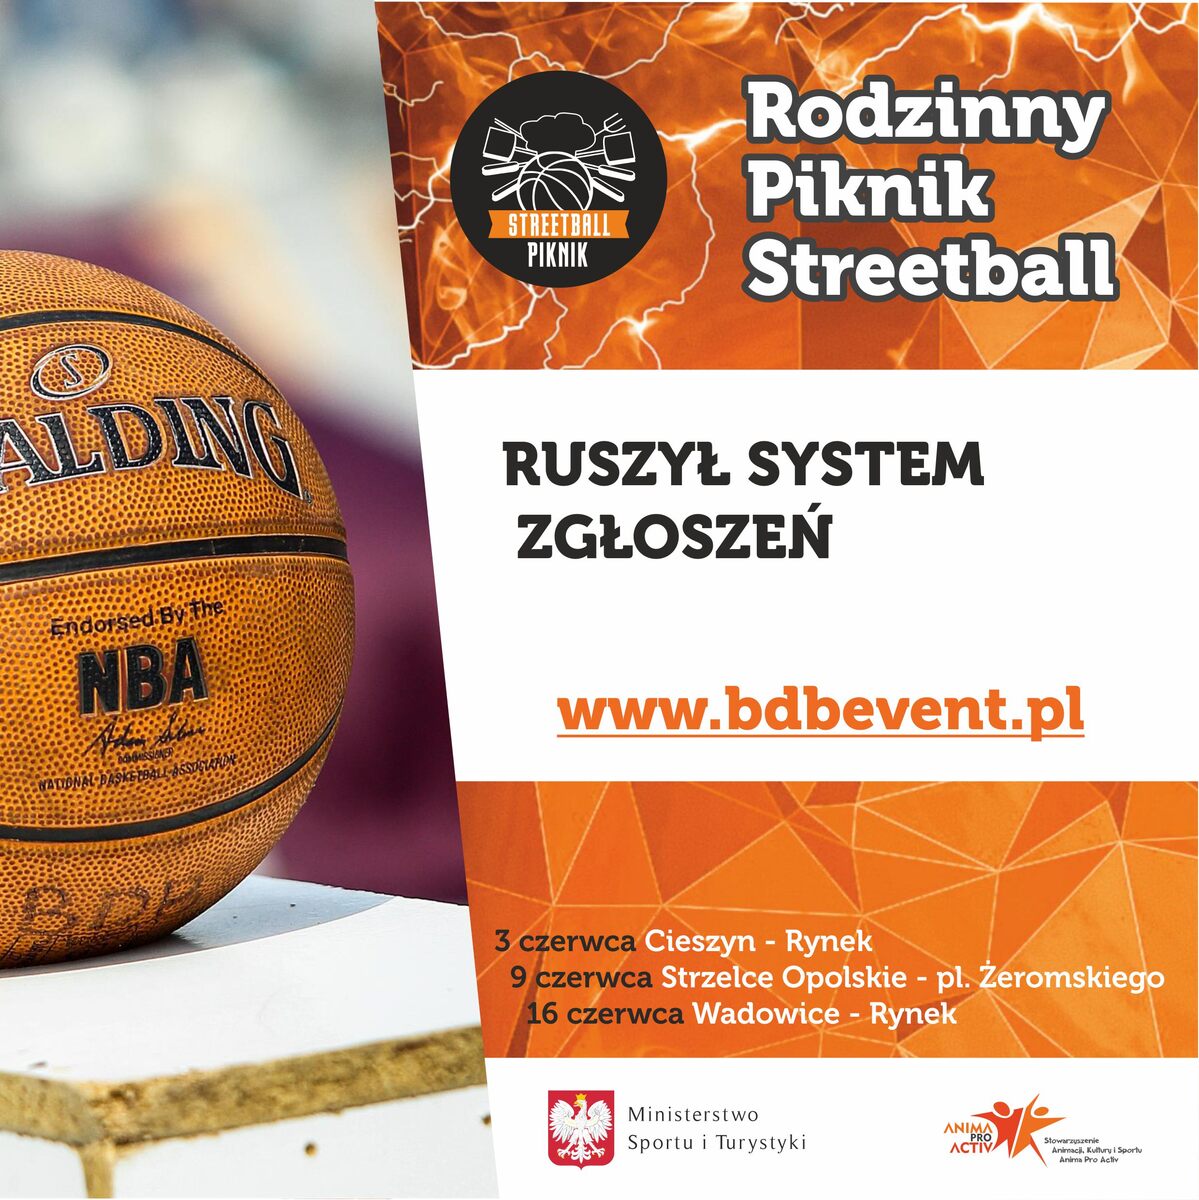 2018 Piknik Streetball fanpage ruszyl system zgloszen - Rodzinny Piknik Streetball 2018 – czyli gra i zabawa dla całej rodziny